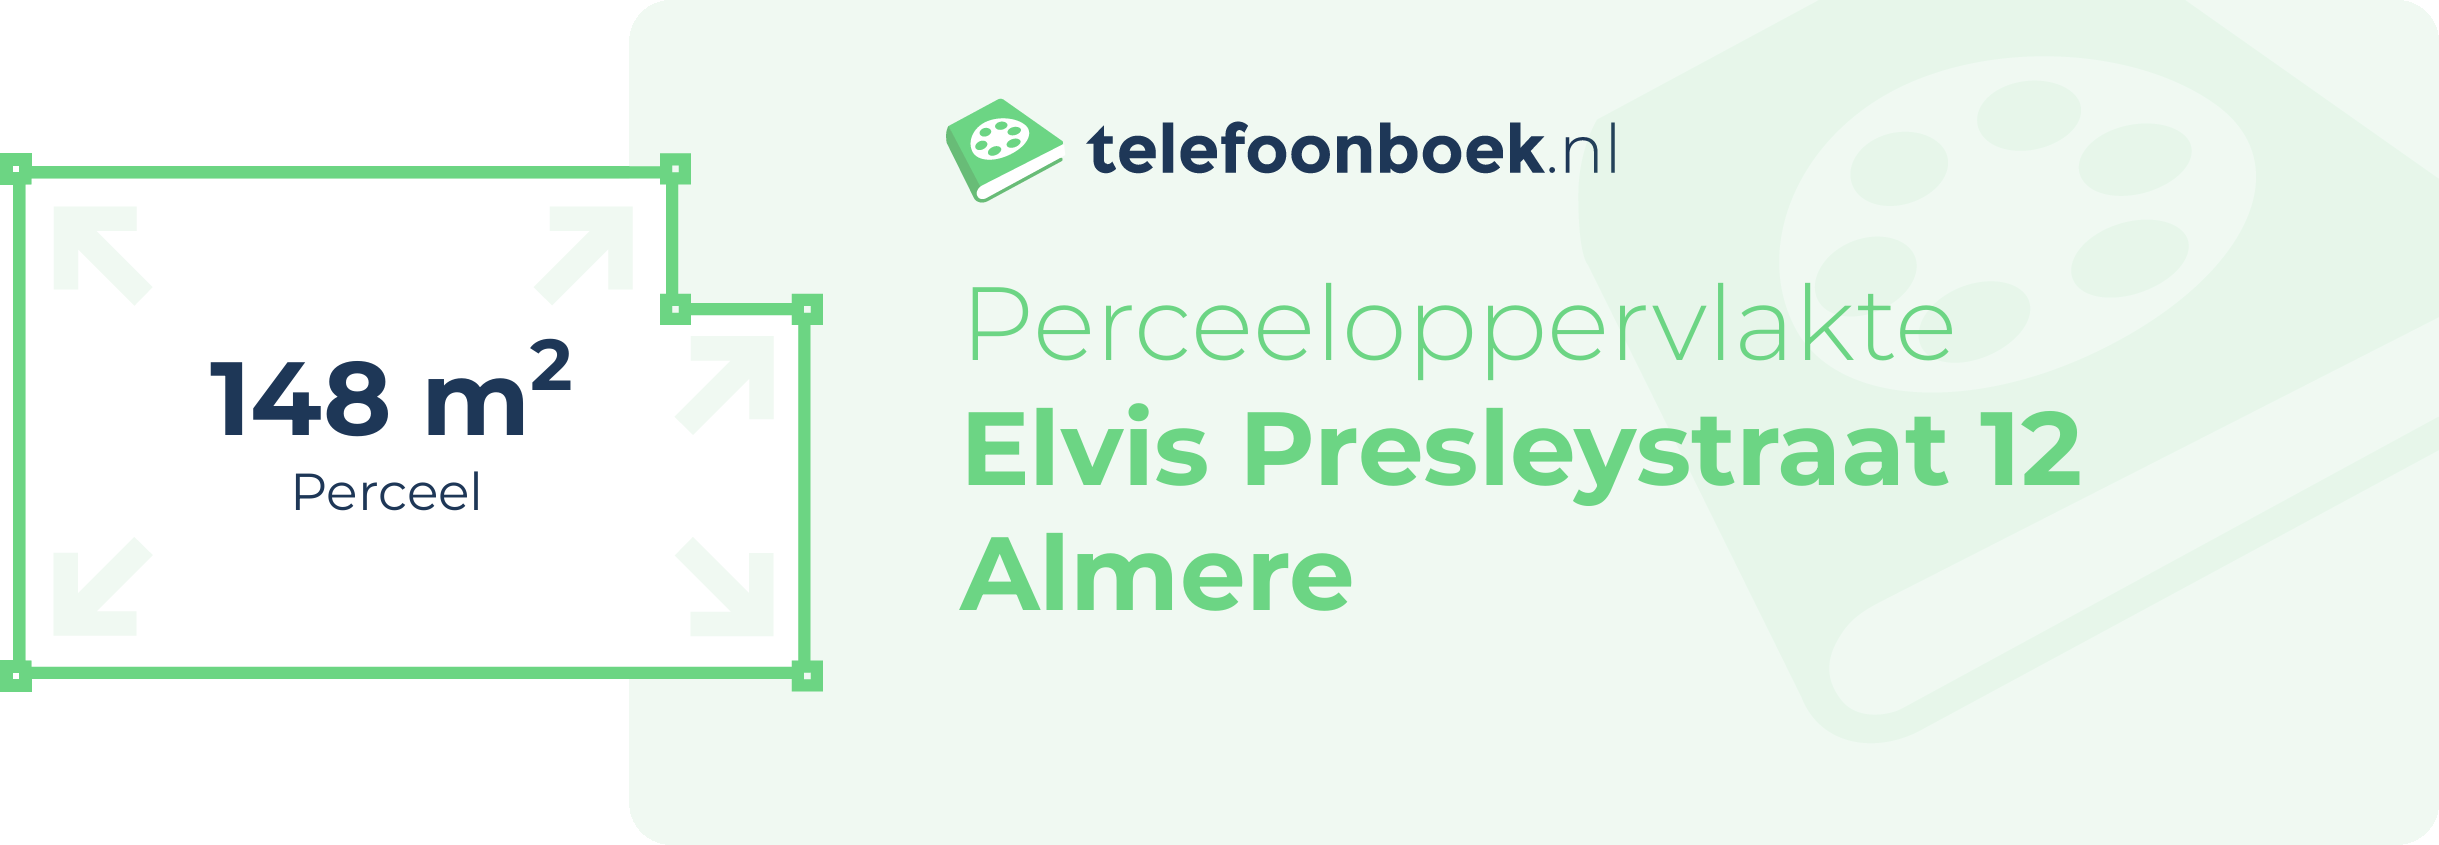 Perceeloppervlakte Elvis Presleystraat 12 Almere